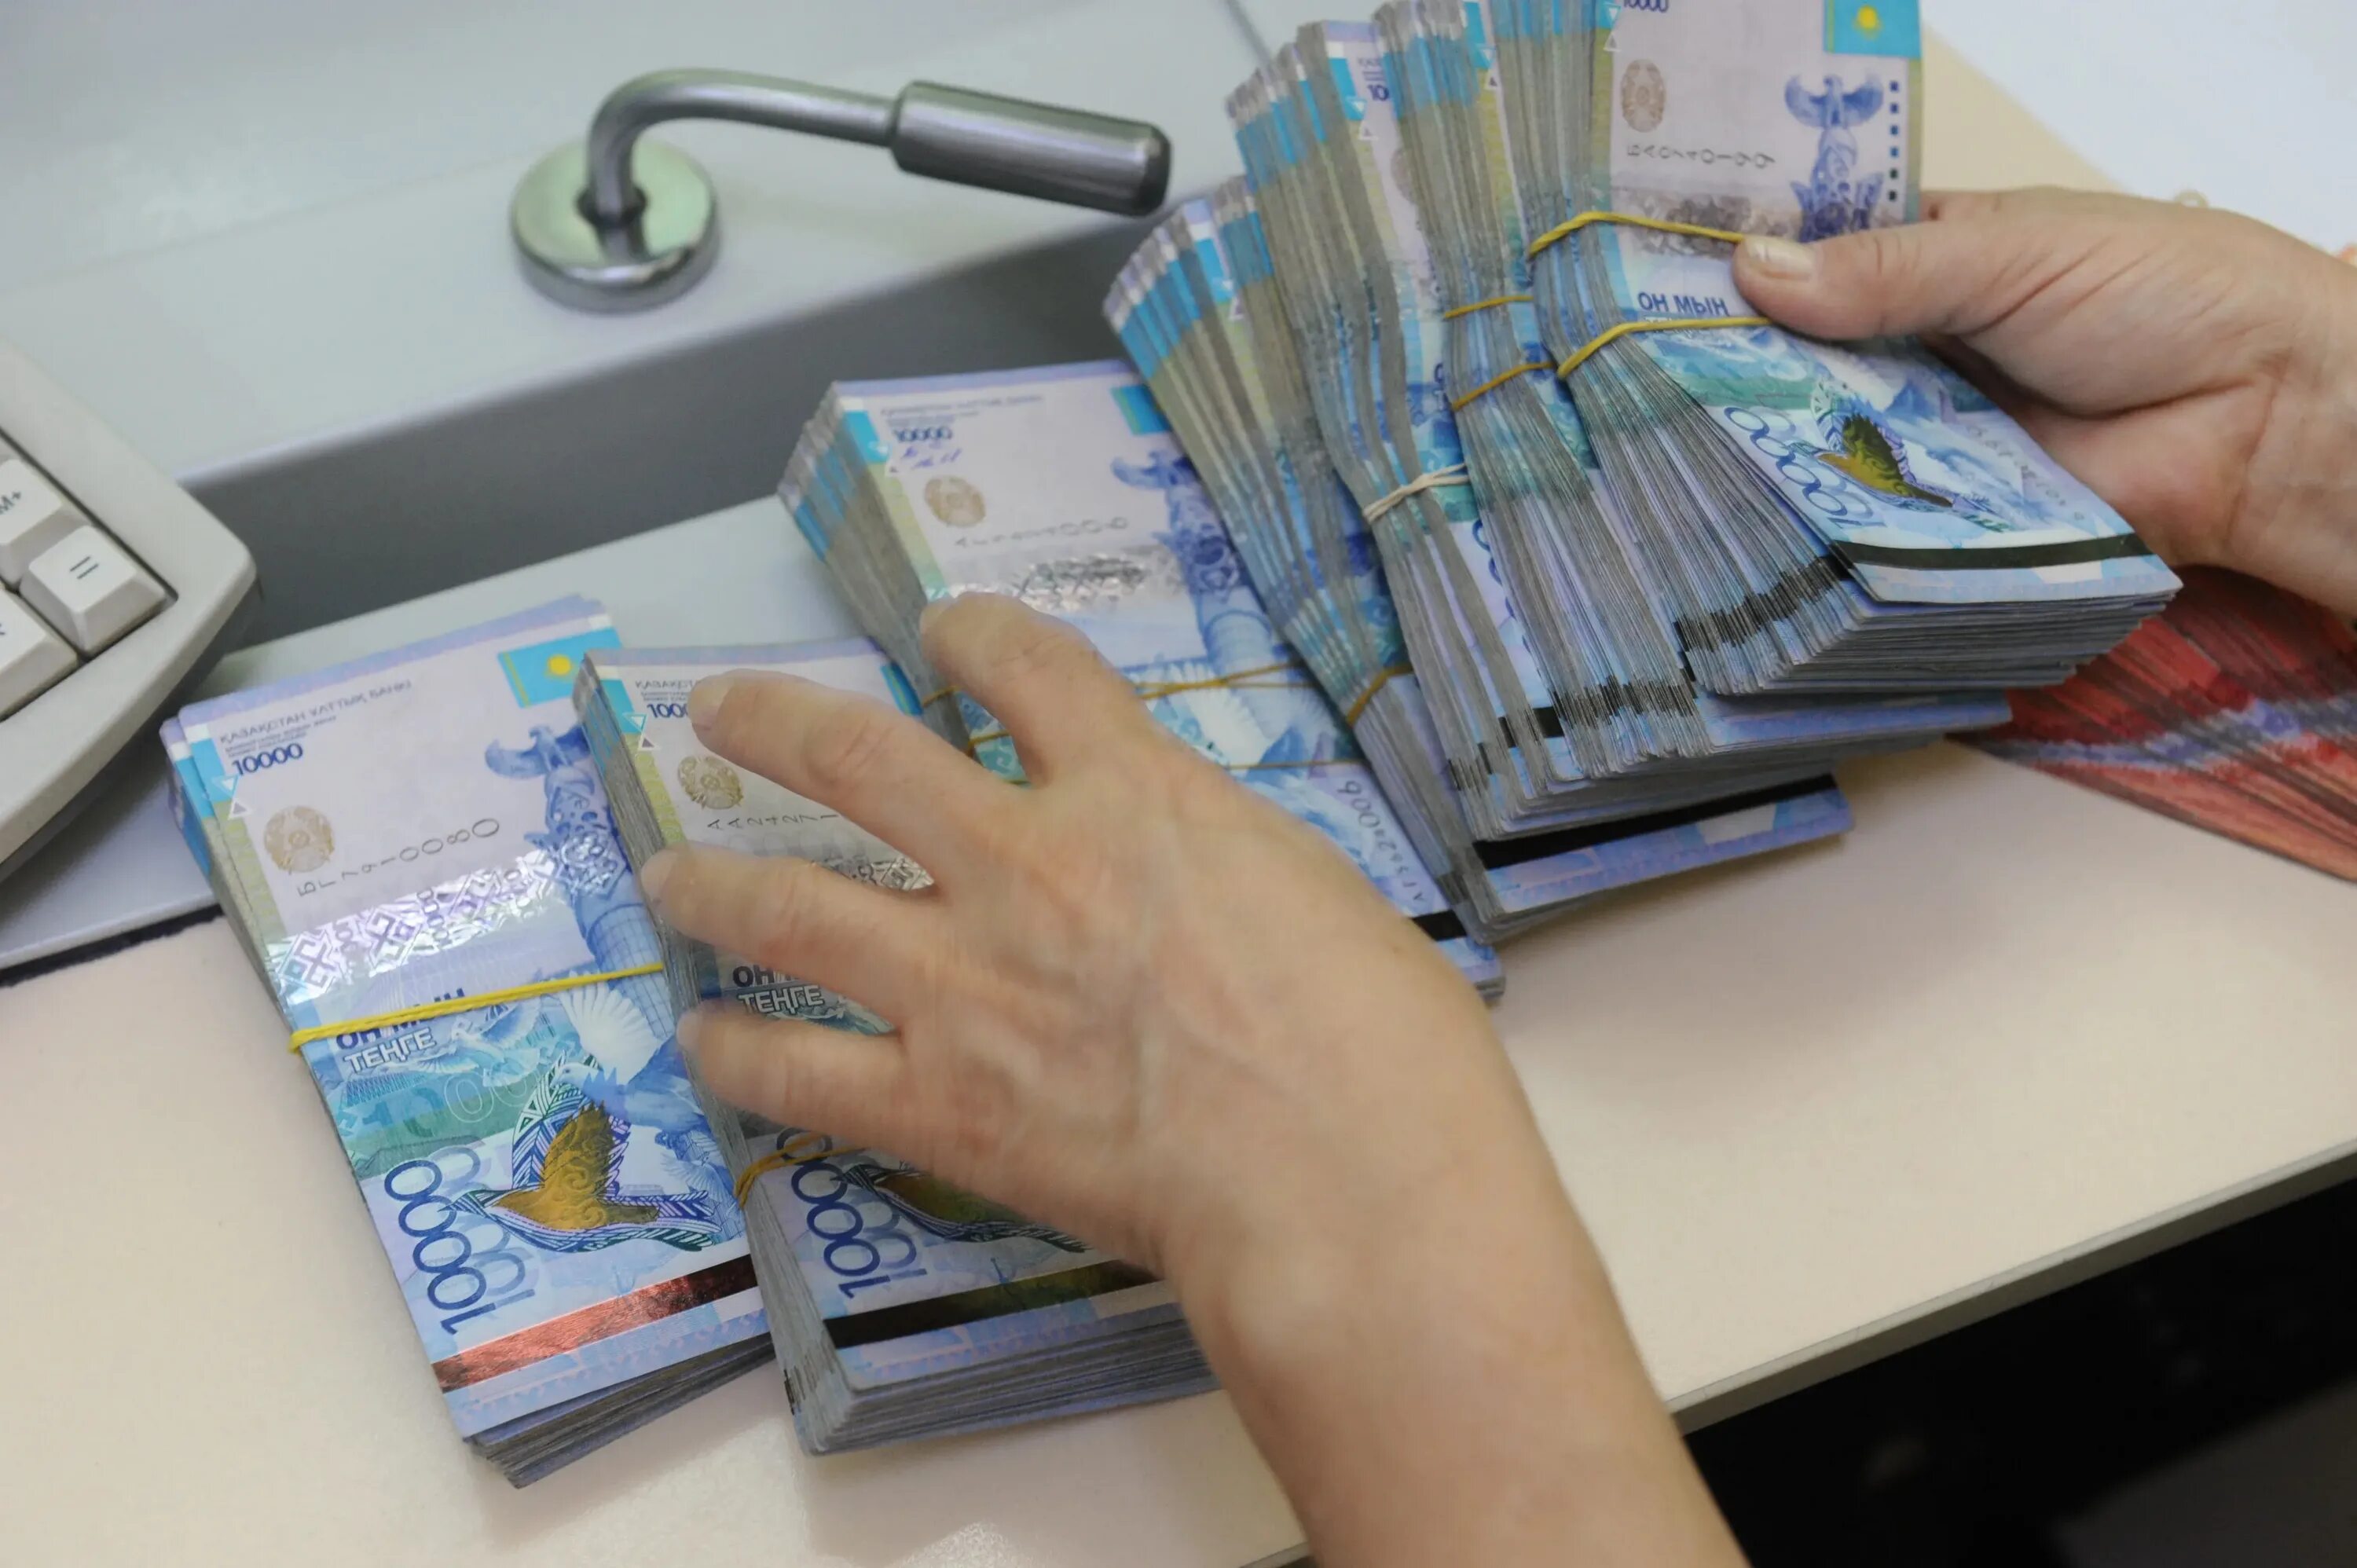 Деньги тенге. Пачки денег тенге. Деньги Казахстана в руках. Деньги Казахстана пачками. 500 000 рублей в тенге